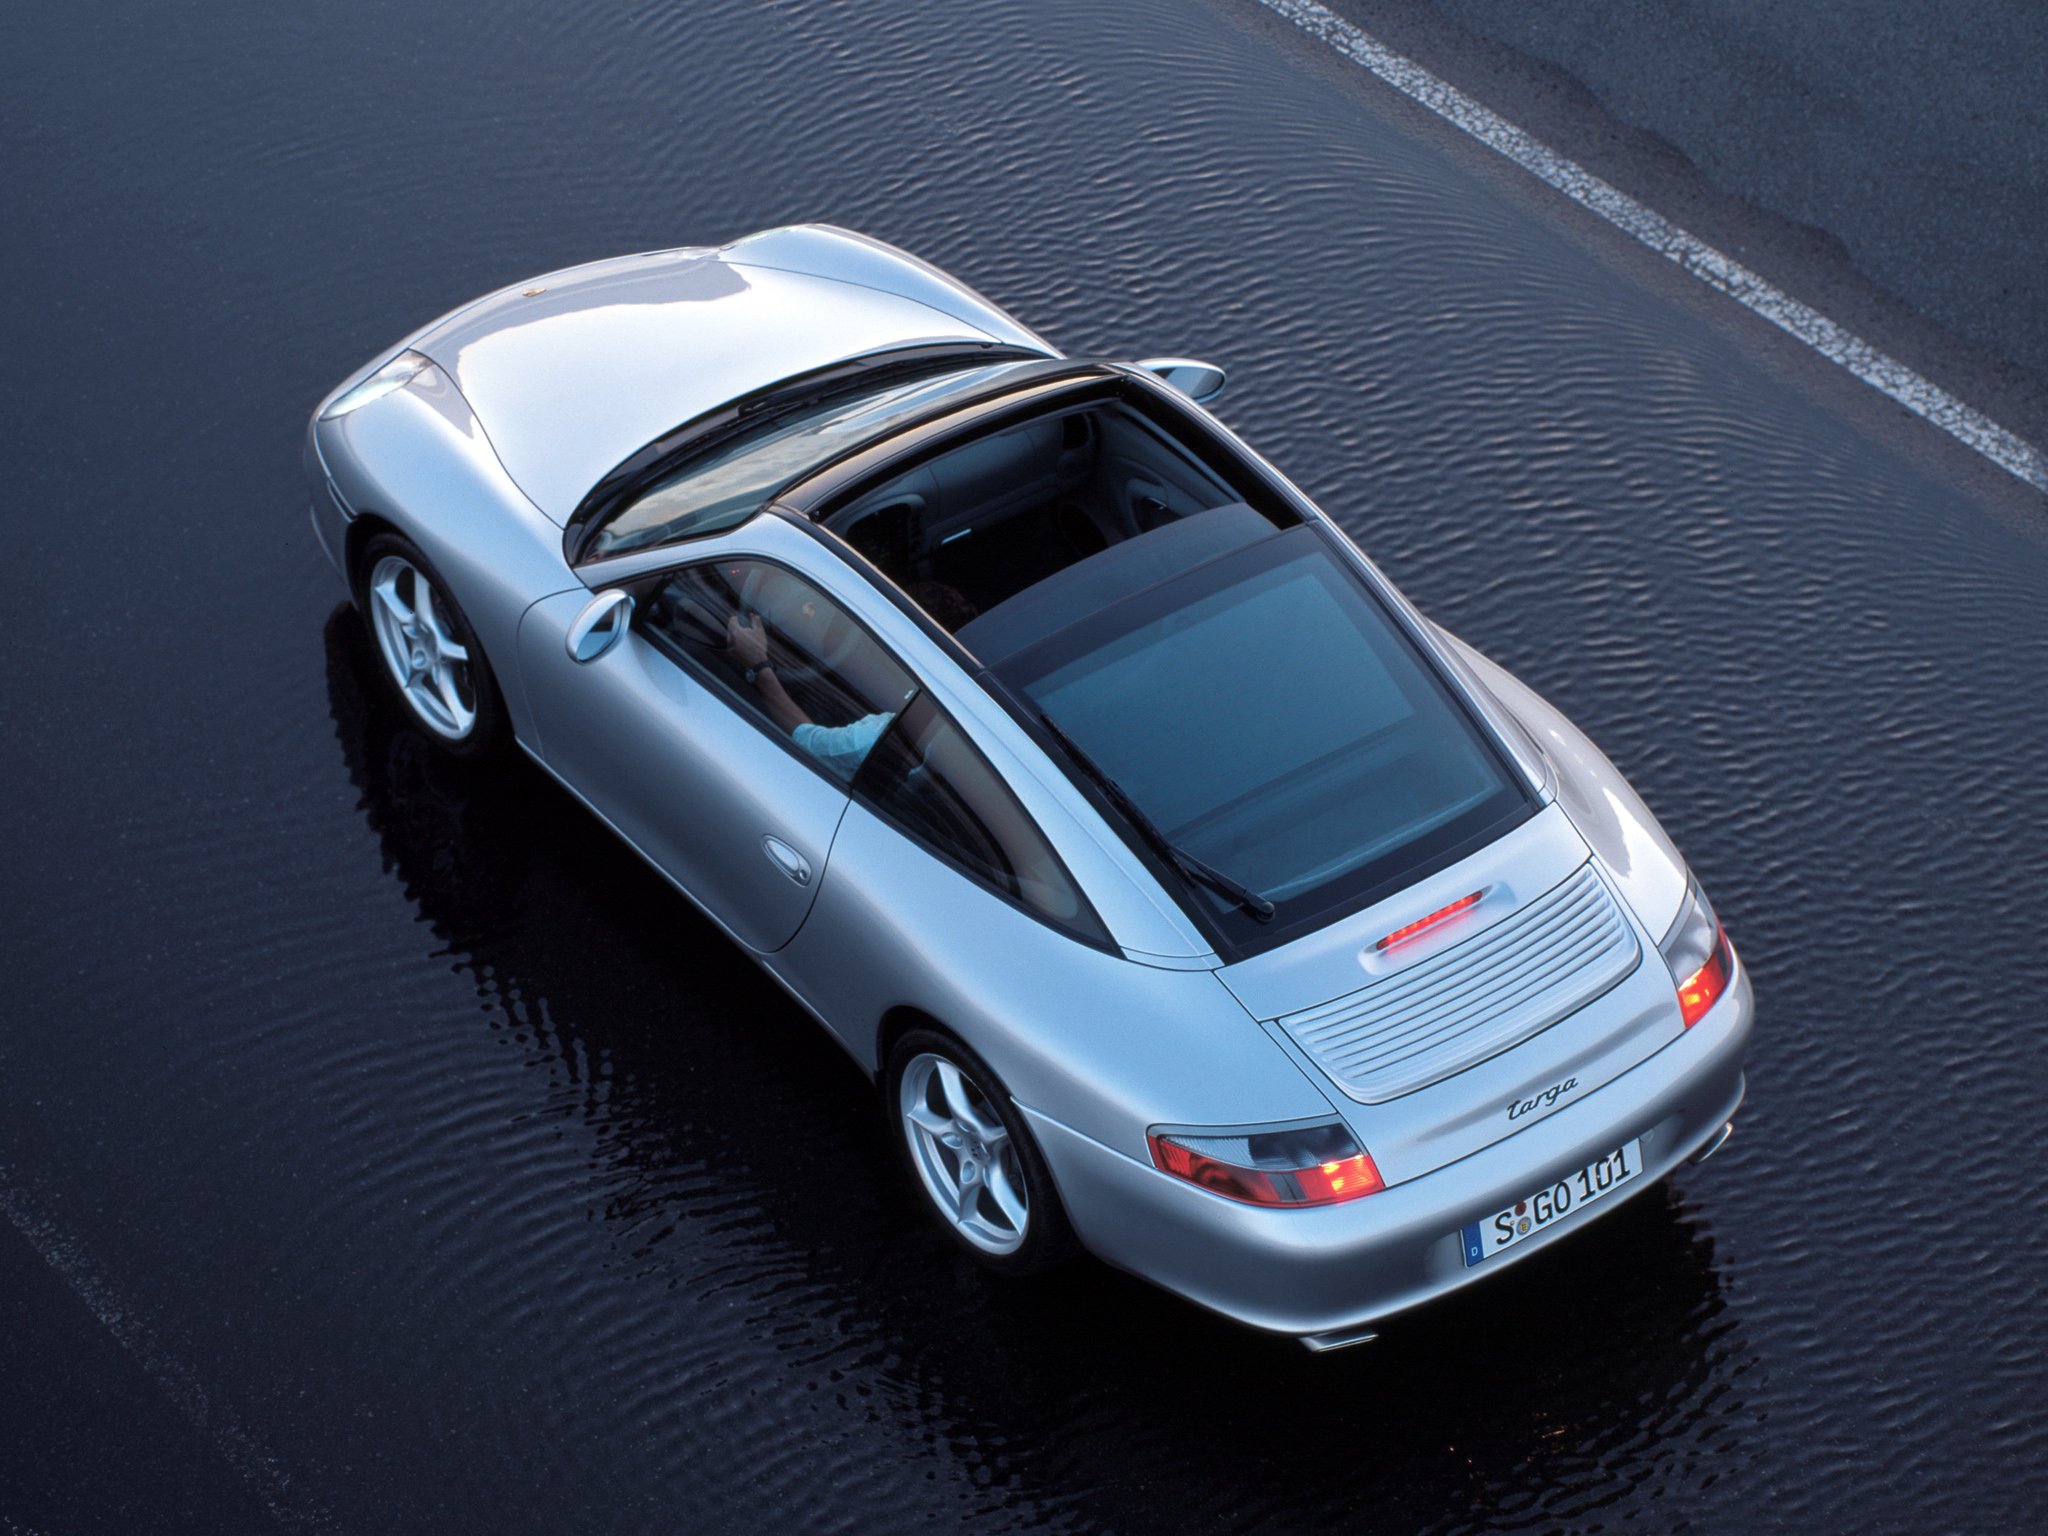 2001 05, Porsche, 911, Targa, 996 Wallpapers HD / Desktop